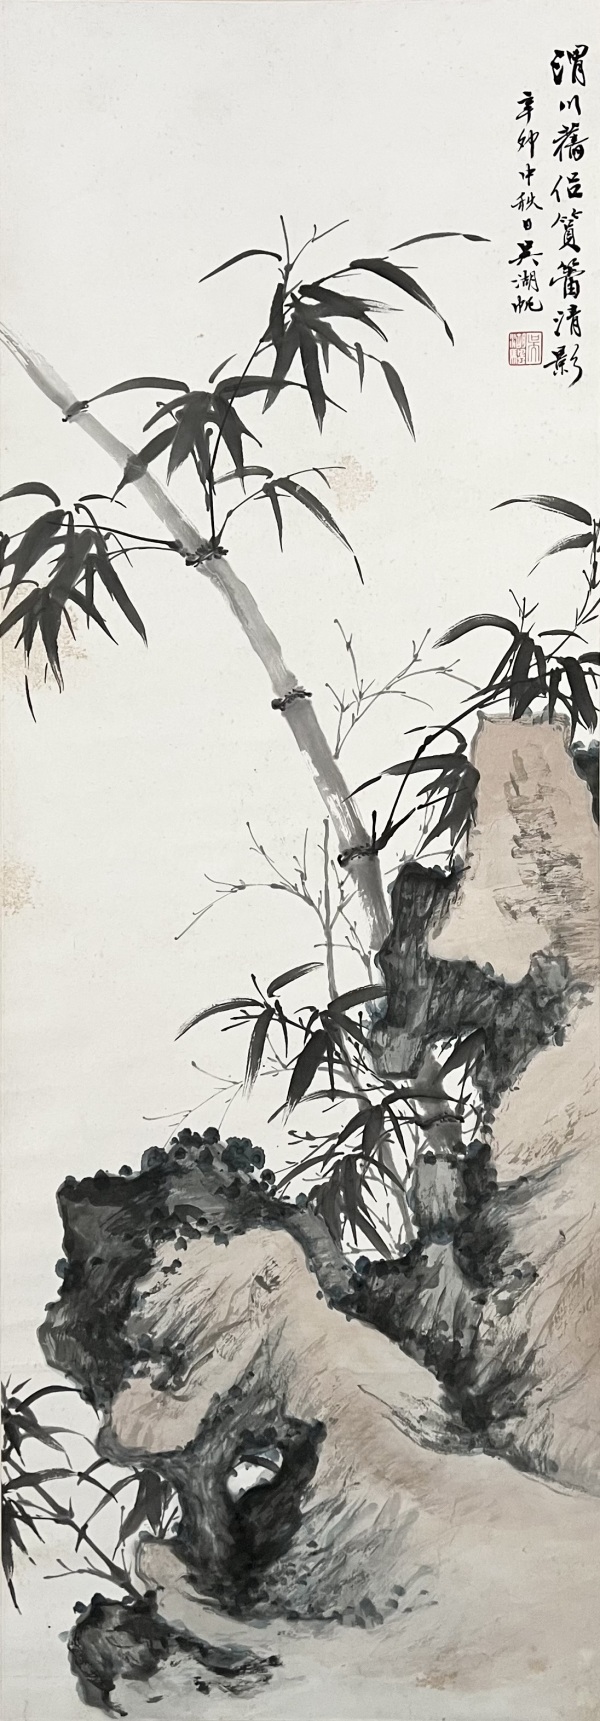 吴湖帆 竹石图（图片来源: 公用领域 私人收藏）